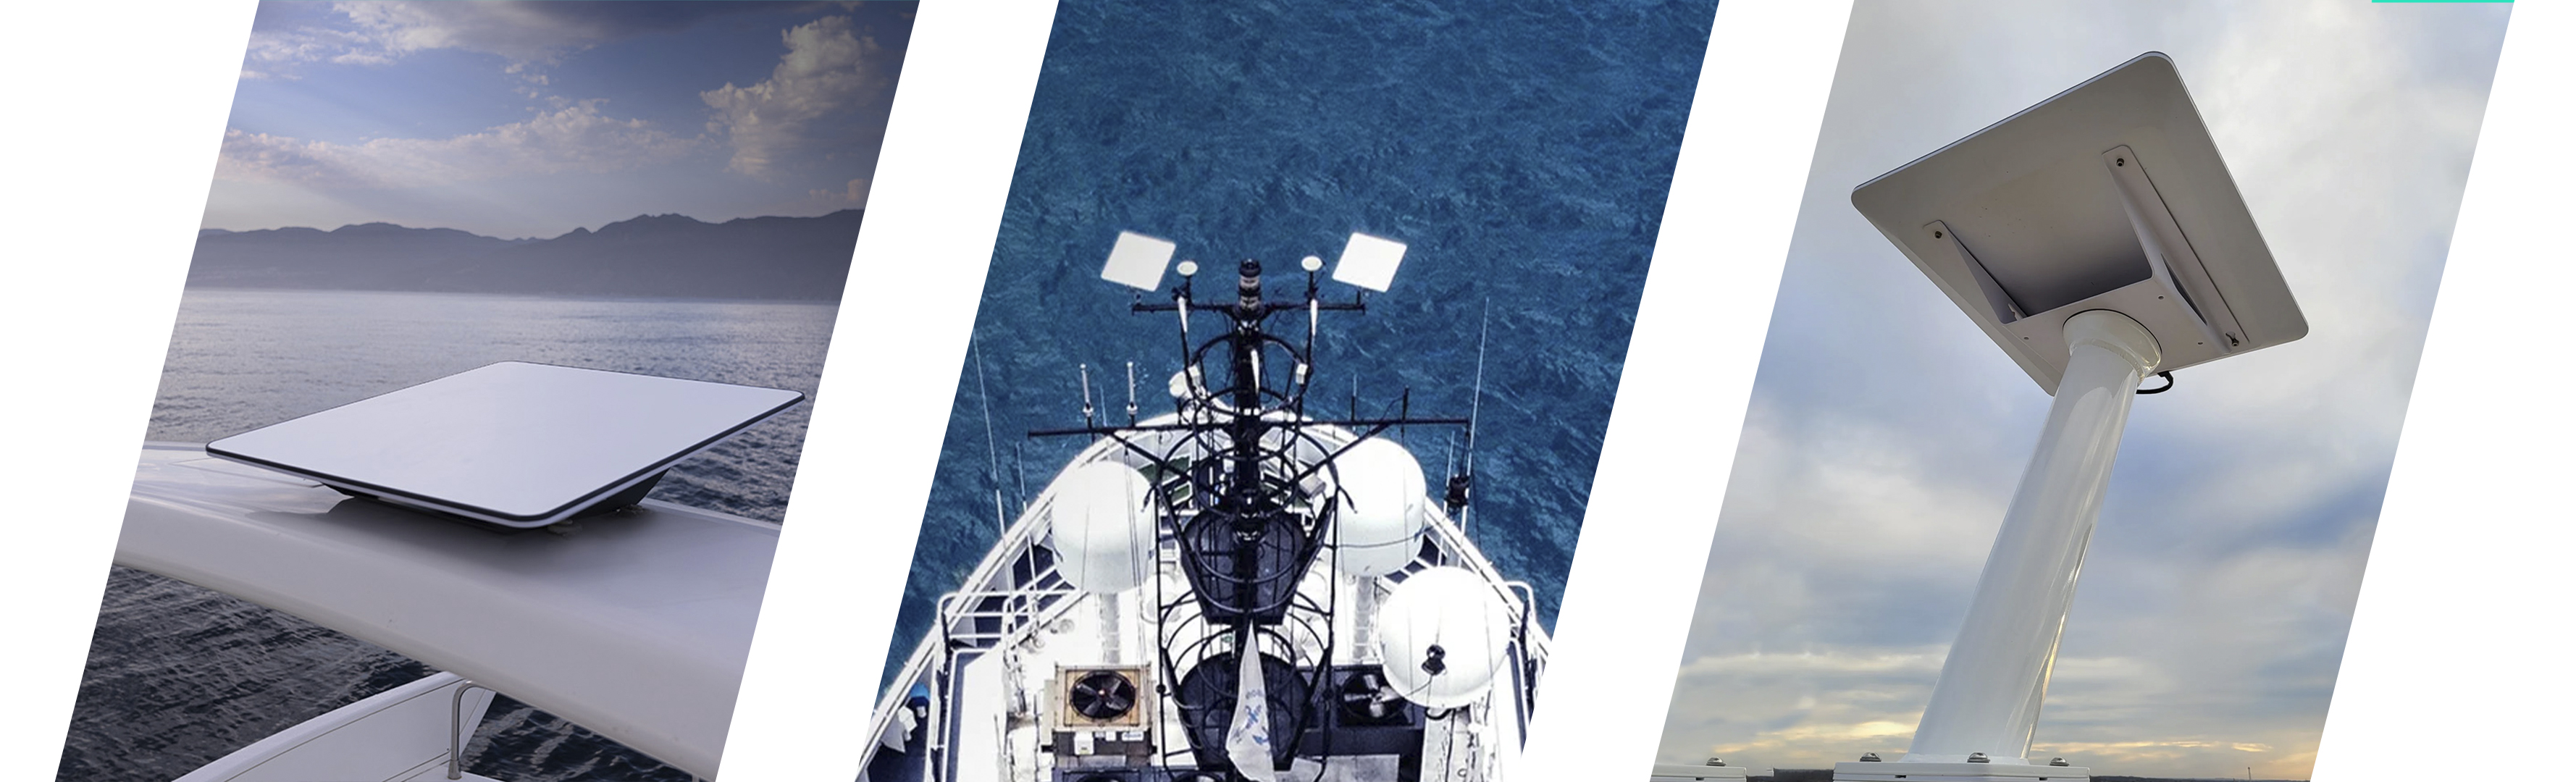 Морський супутниковий модем Starlink Internet Satellite 2gen Maritime для дрона. Купити морський старлінк для дрона під замовлення на Marketnet